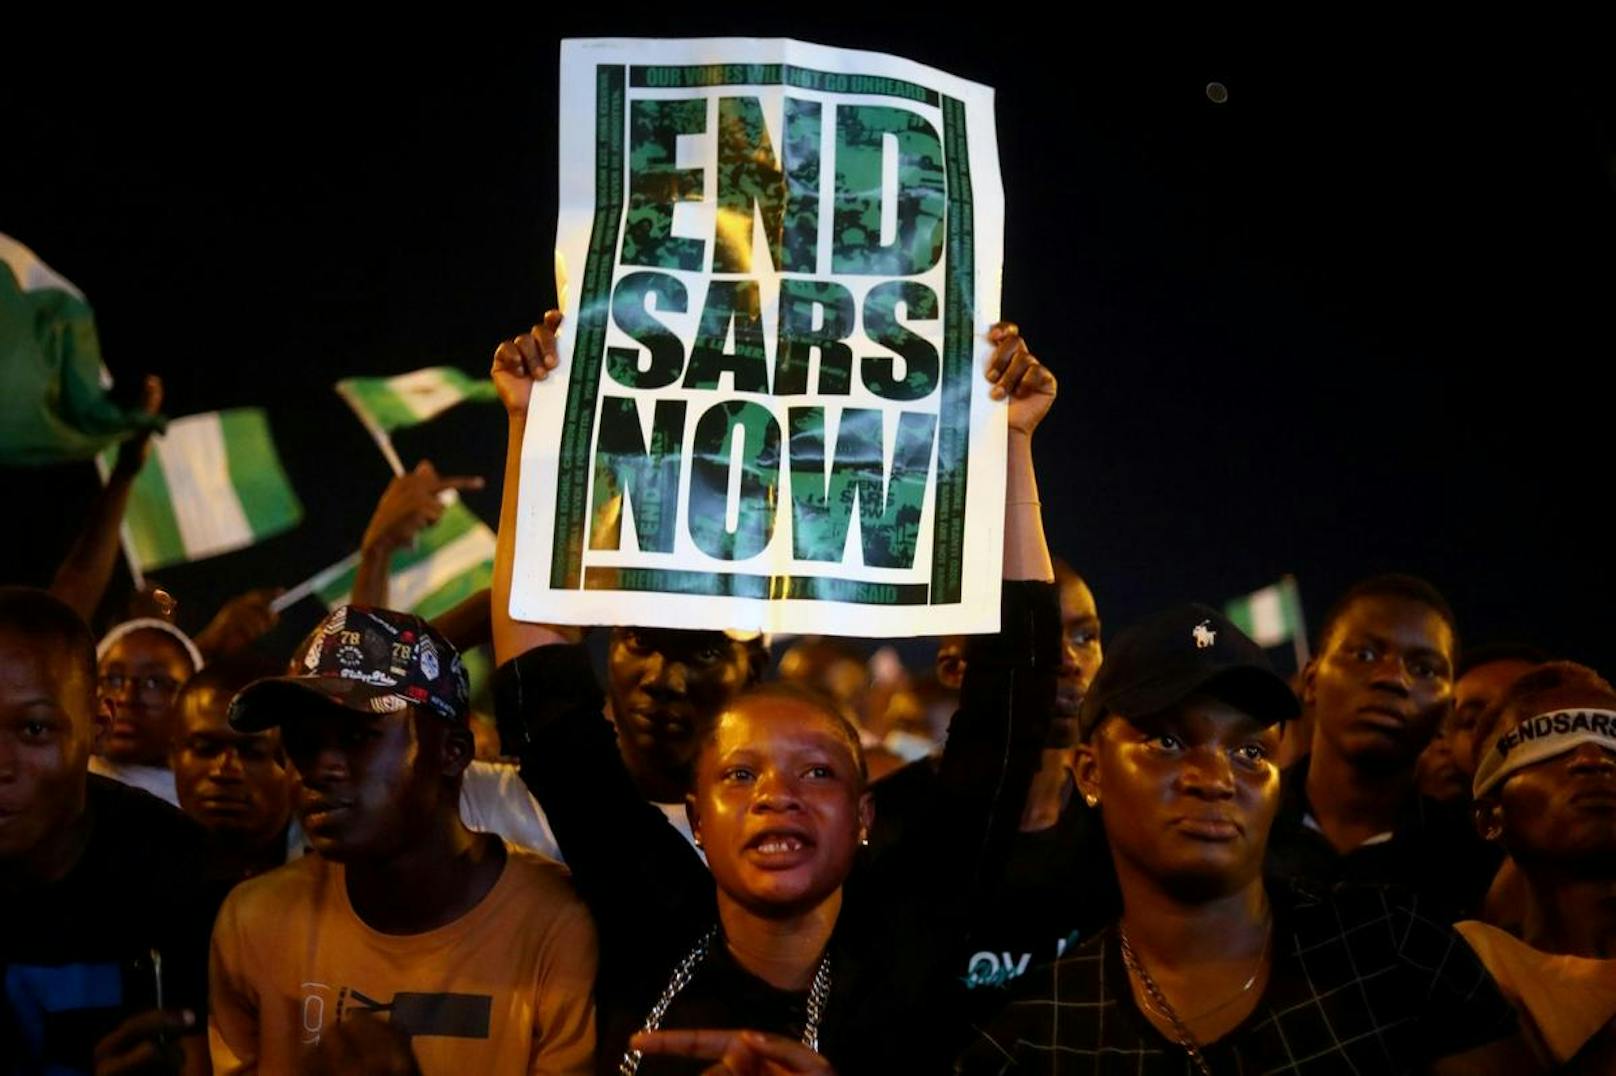 Die landesweiten Proteste richteten sich vor allem gegen die mittlerweile aufgelöste Eliteeinheit Special Anti-Robbery Squad (SARS). Inzwischen fordern die Demonstranten weitrechende Polizeireformen.